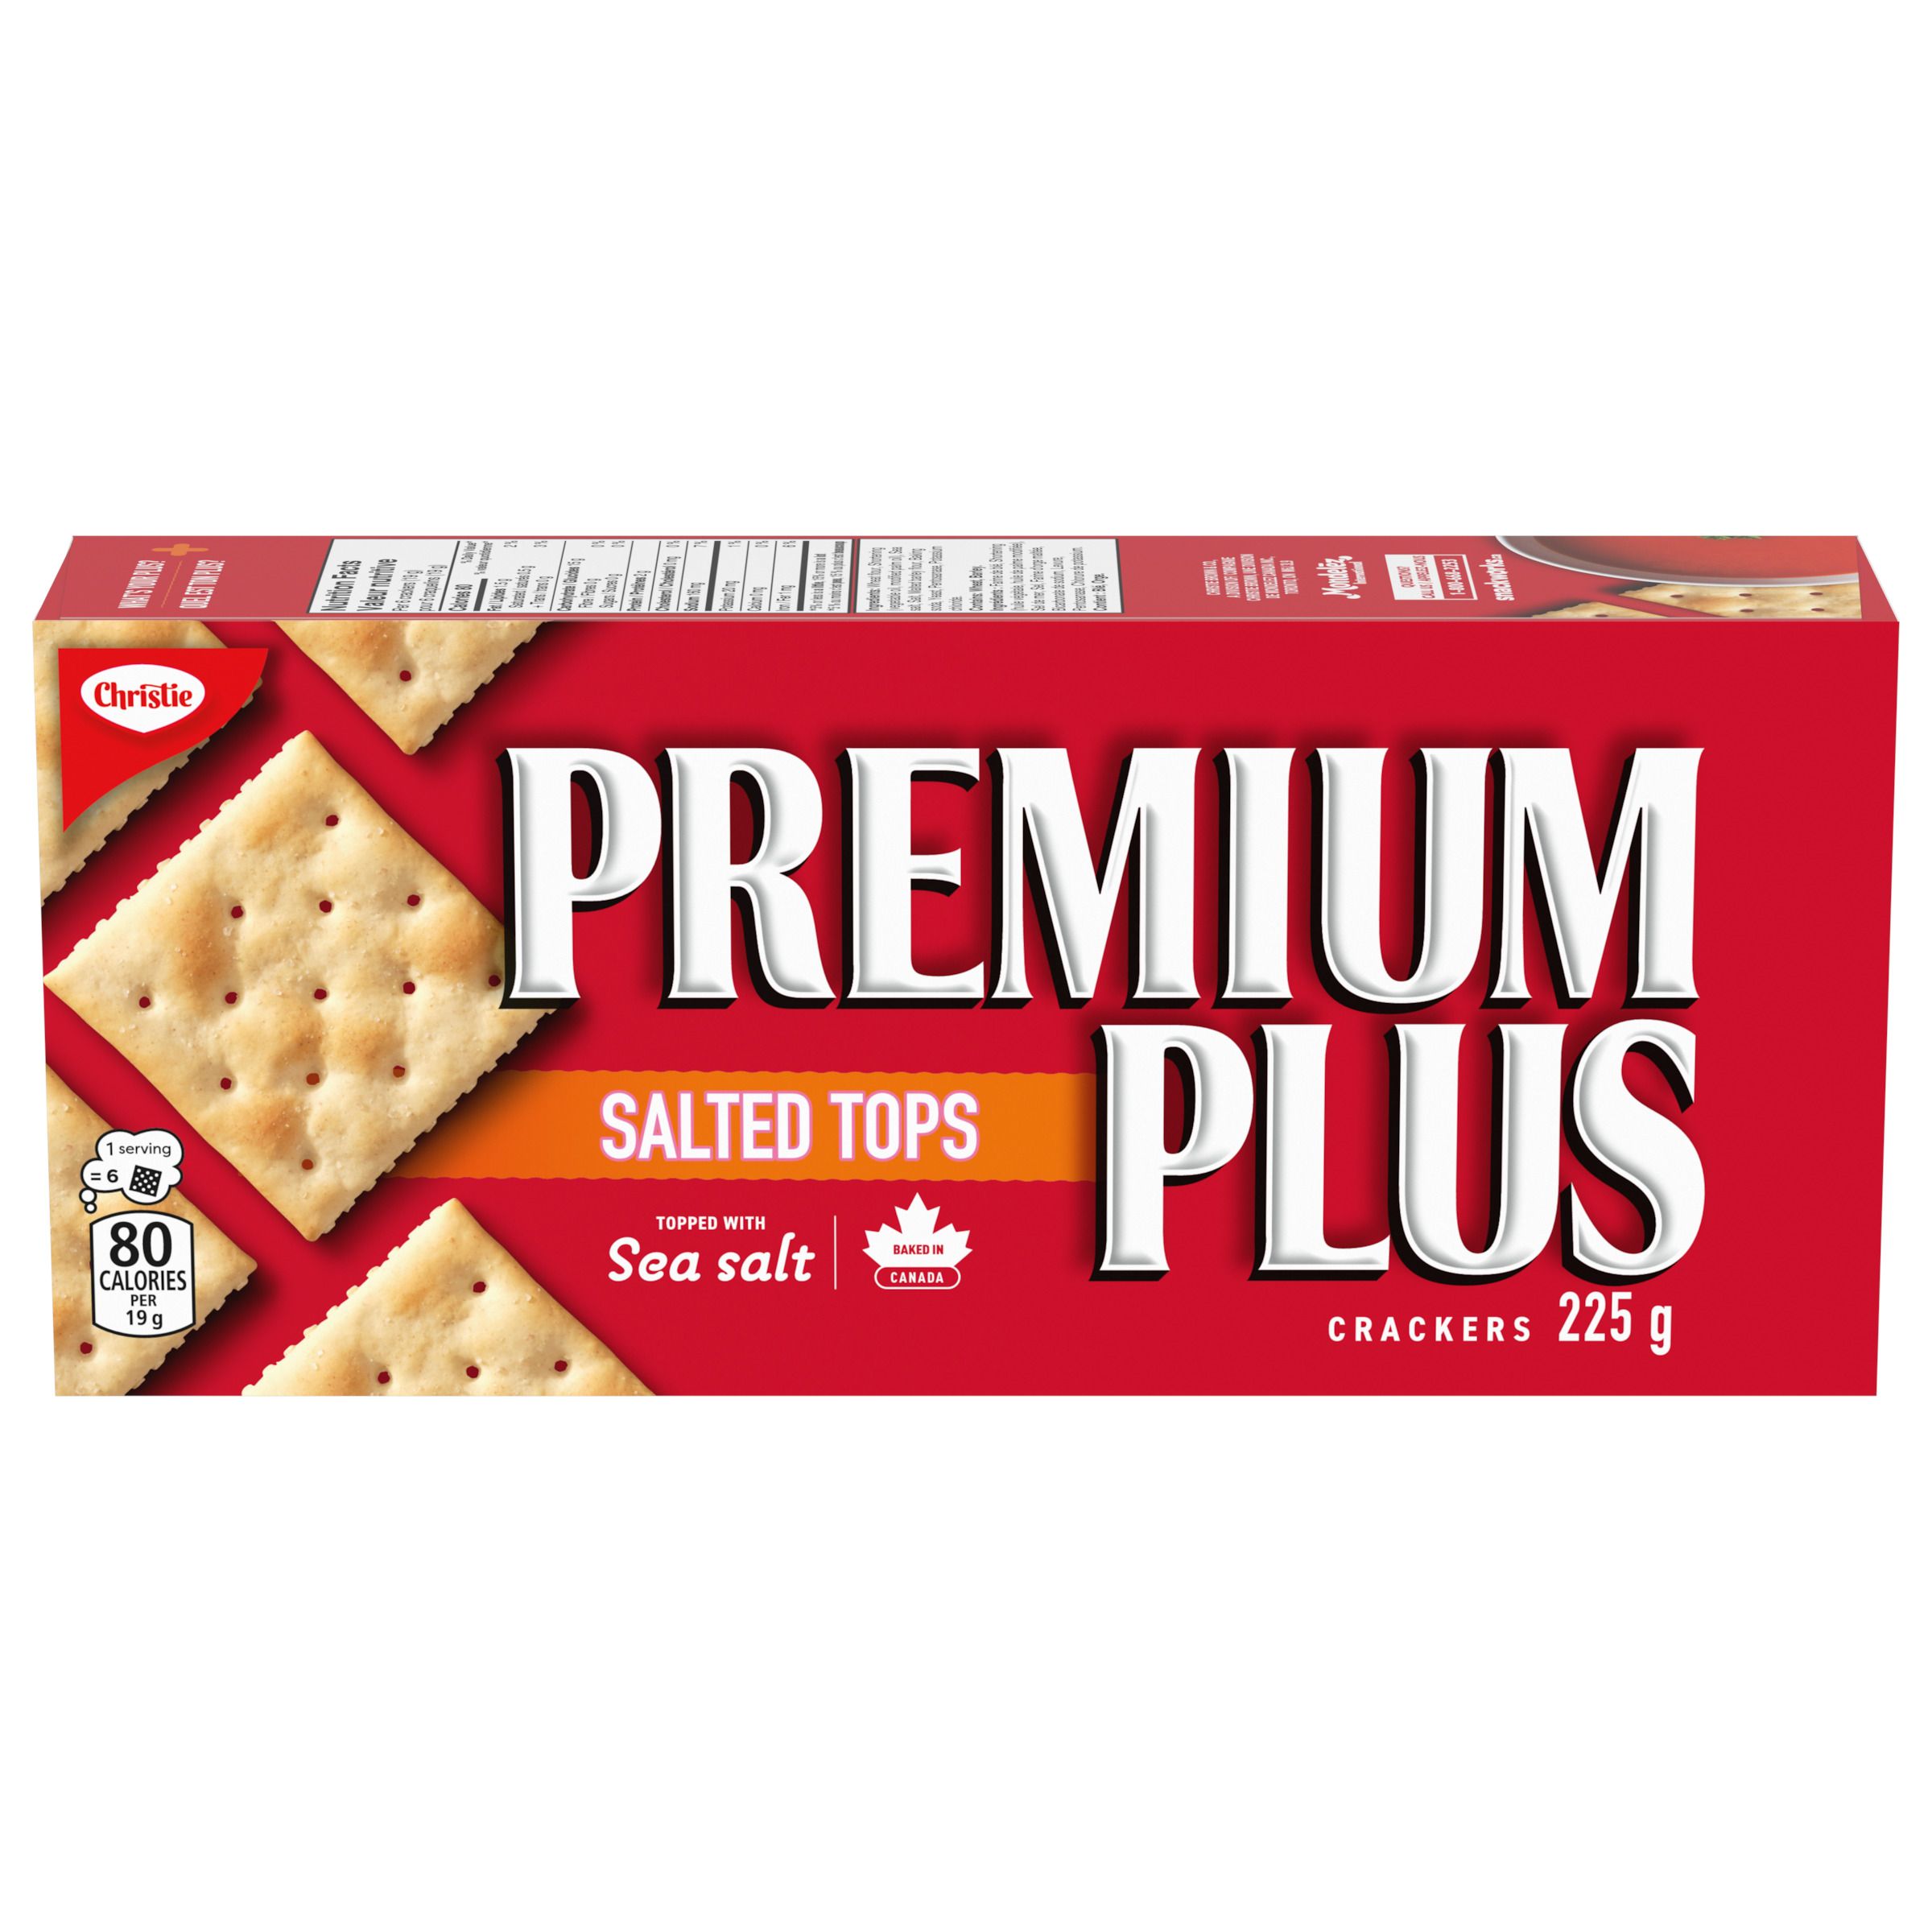 Premium Plus Salted Tops Crackers 225 G